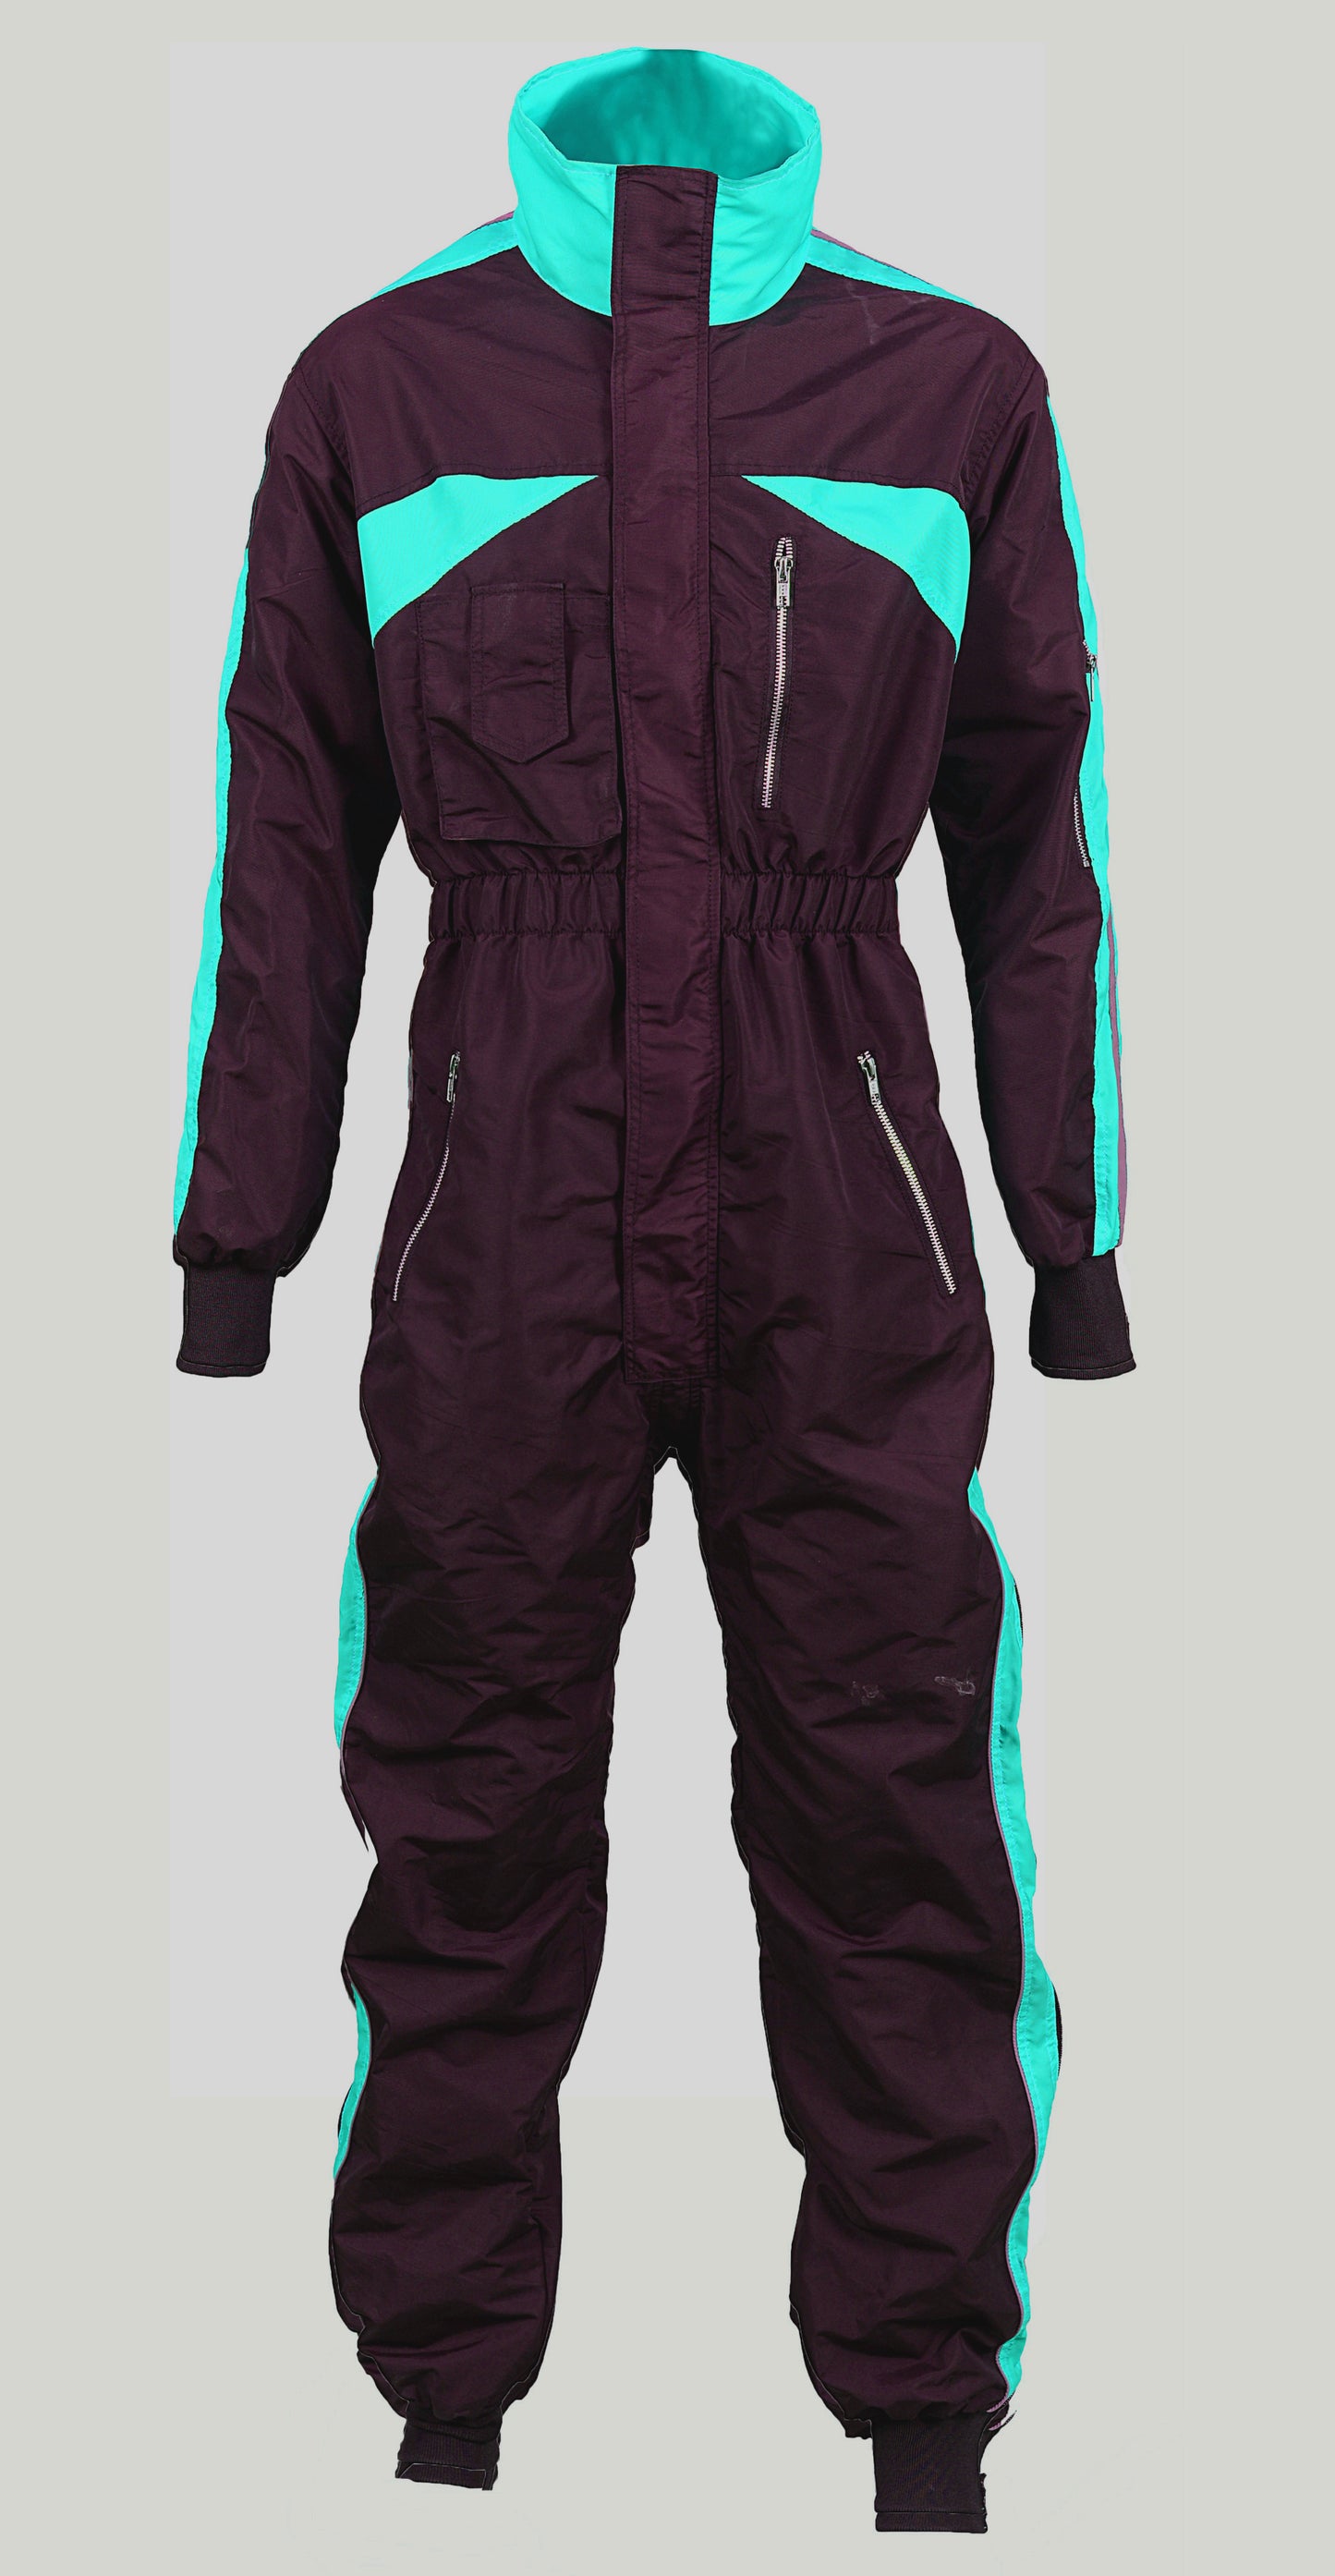 Latest Design Paragliding suit de-01 (skyex suits)